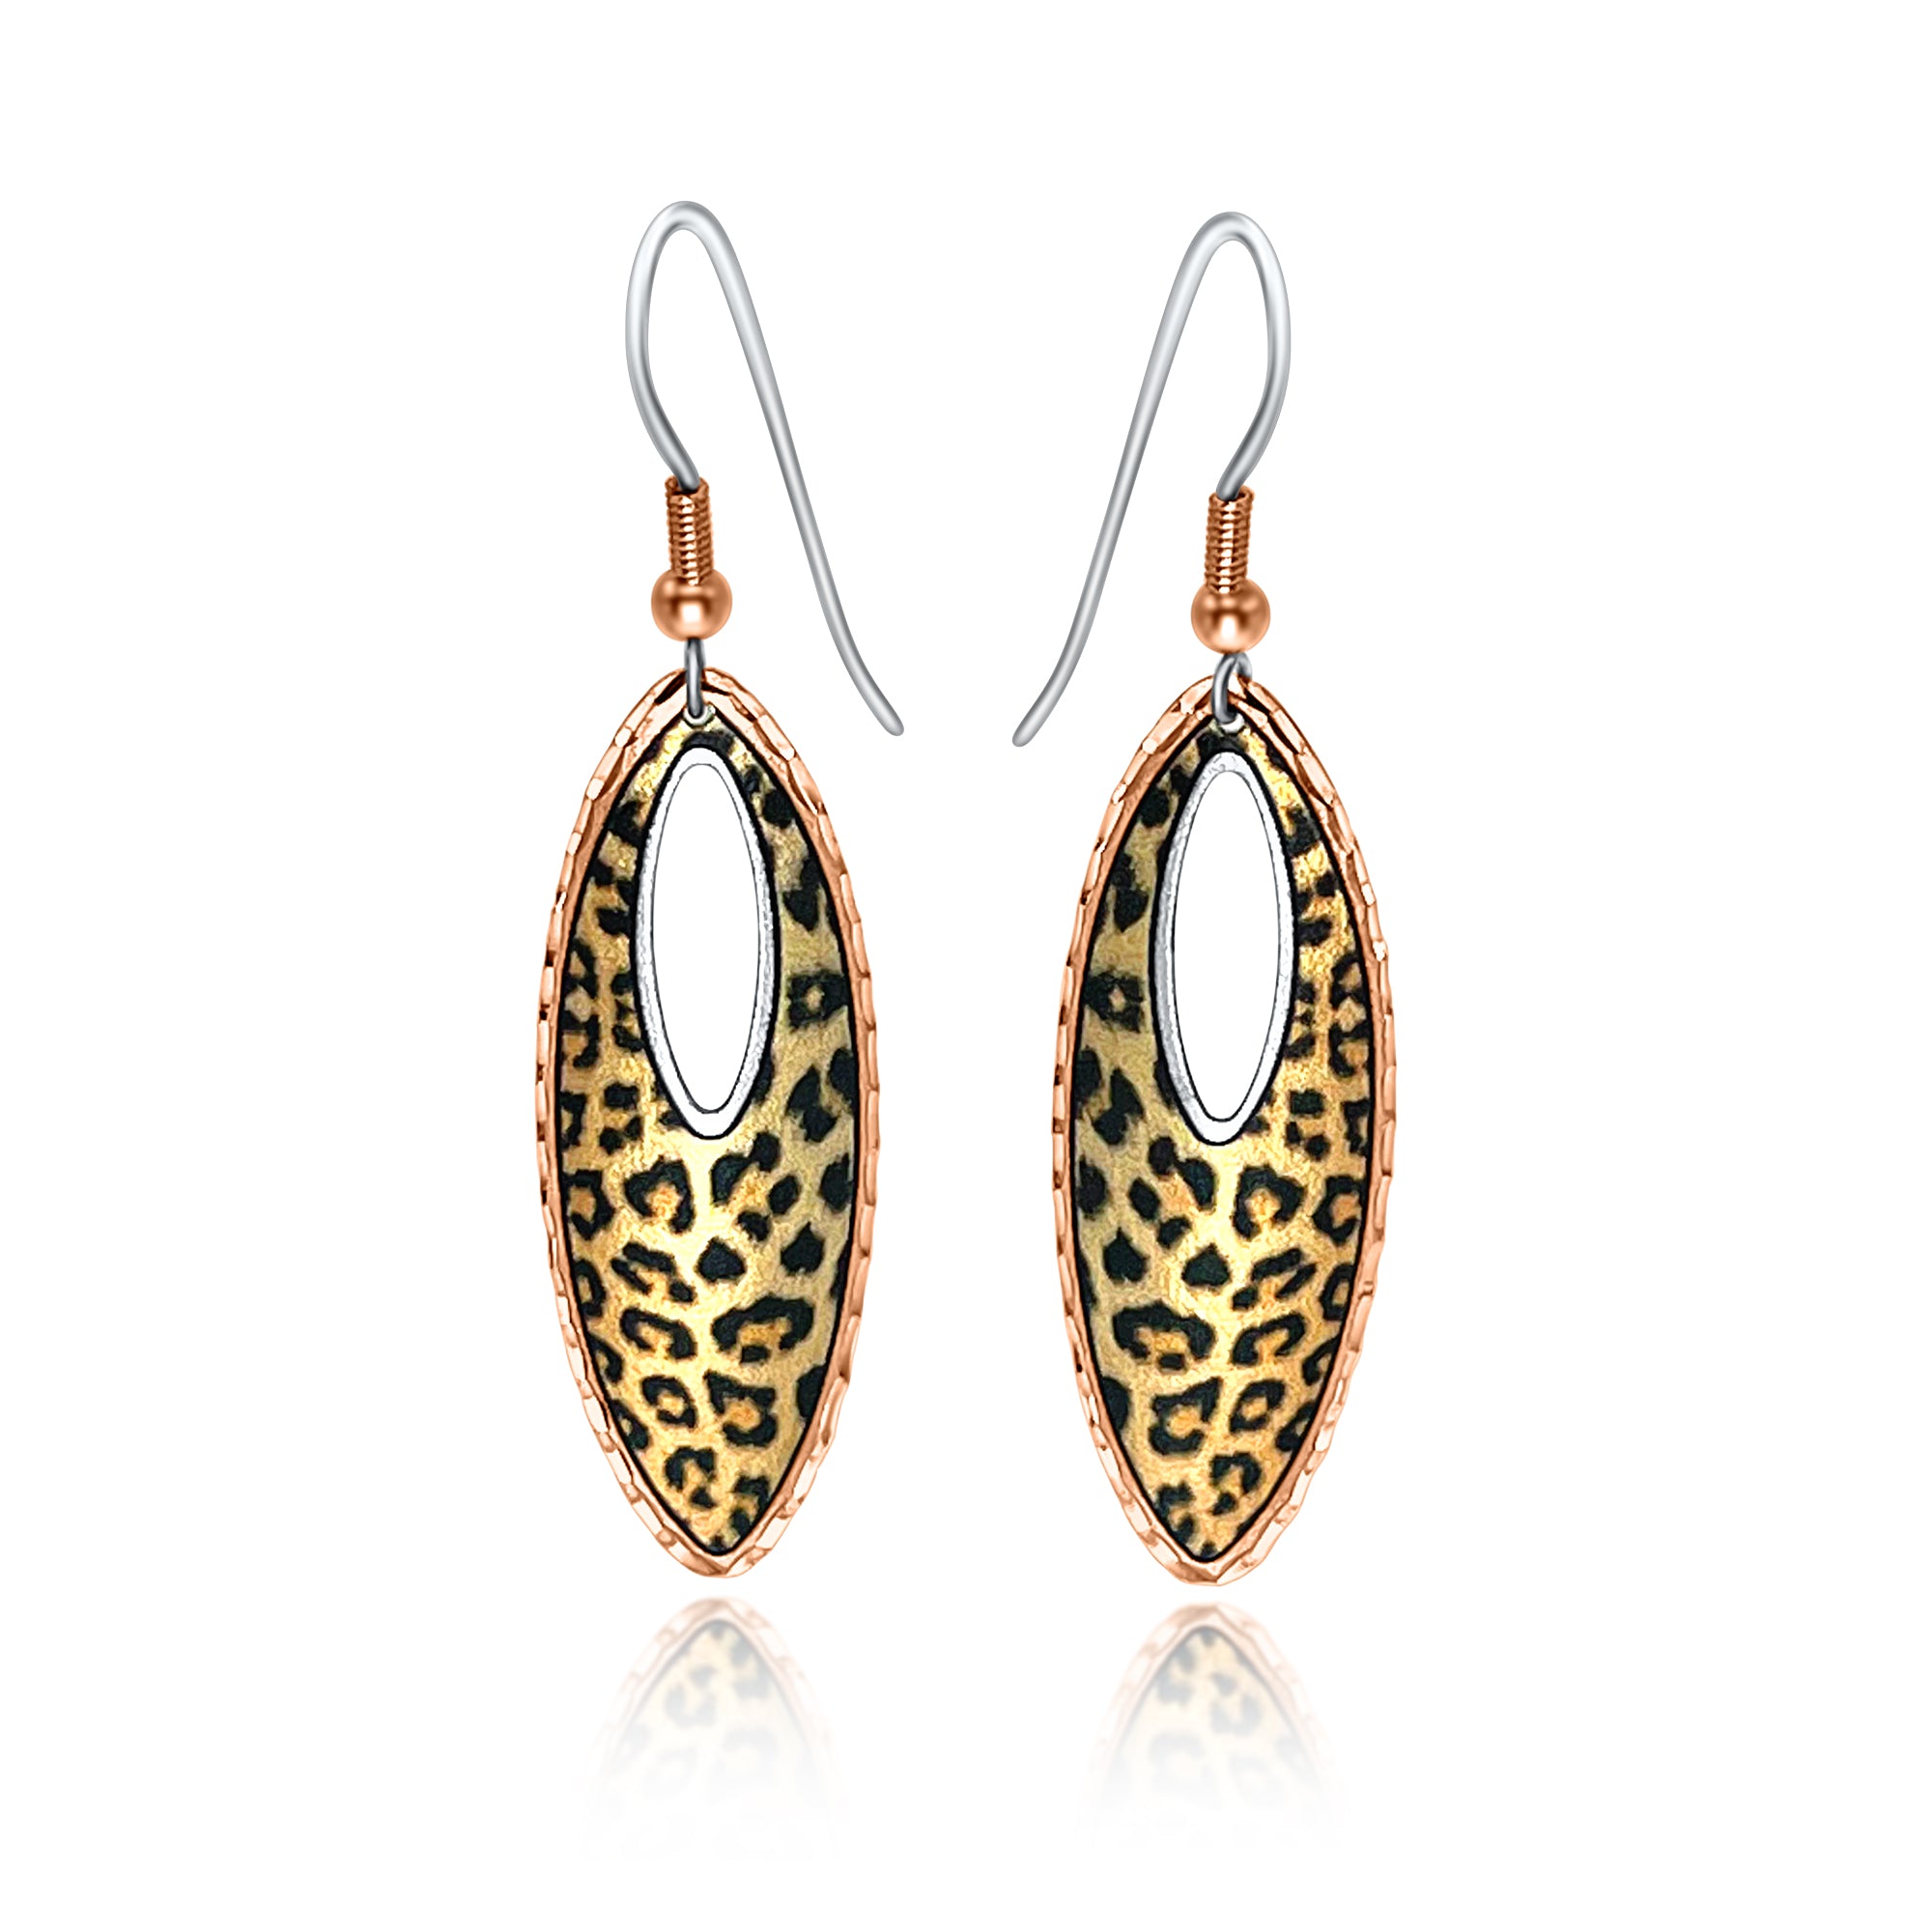 Leopard handmade earrings